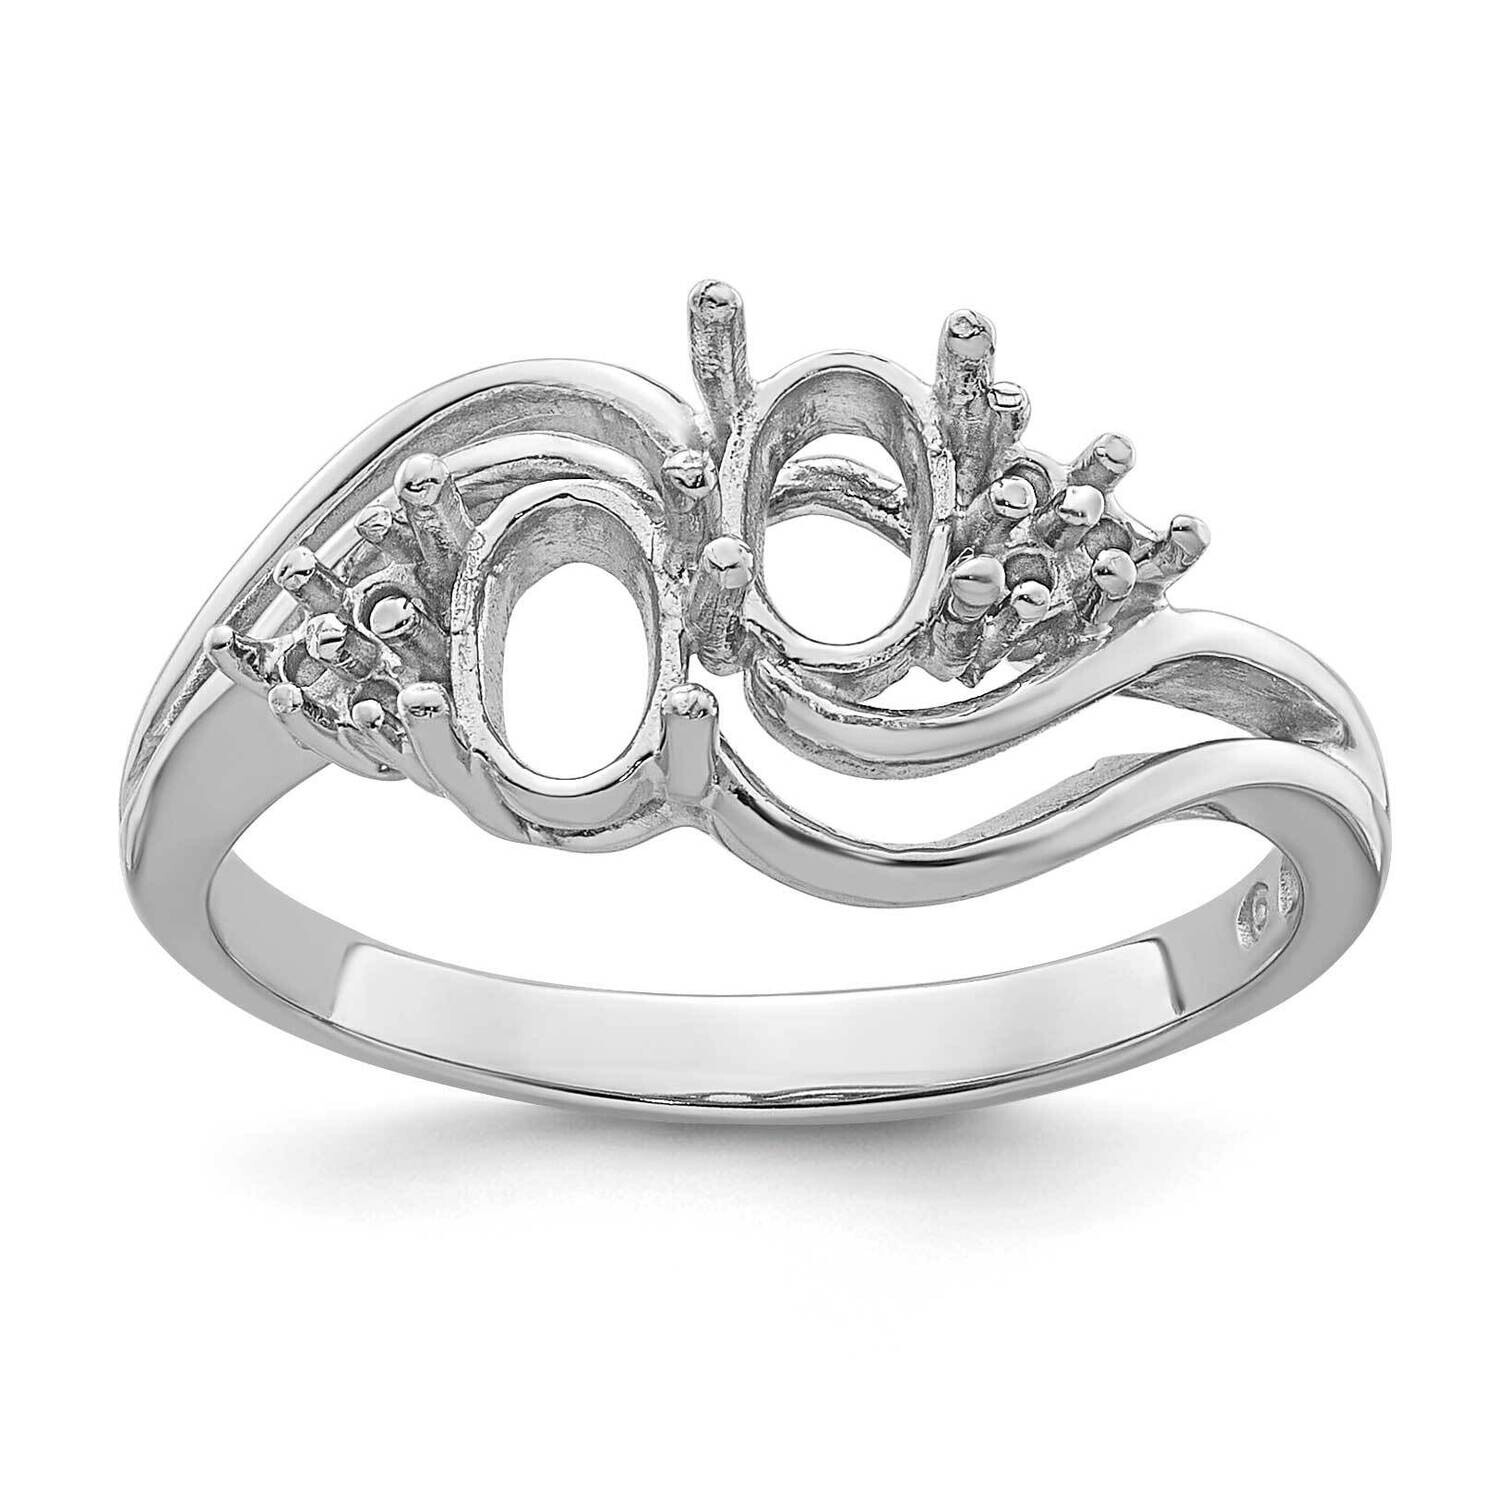 Diamond & Gemstone Ring Mounting 14k White Gold Y4618